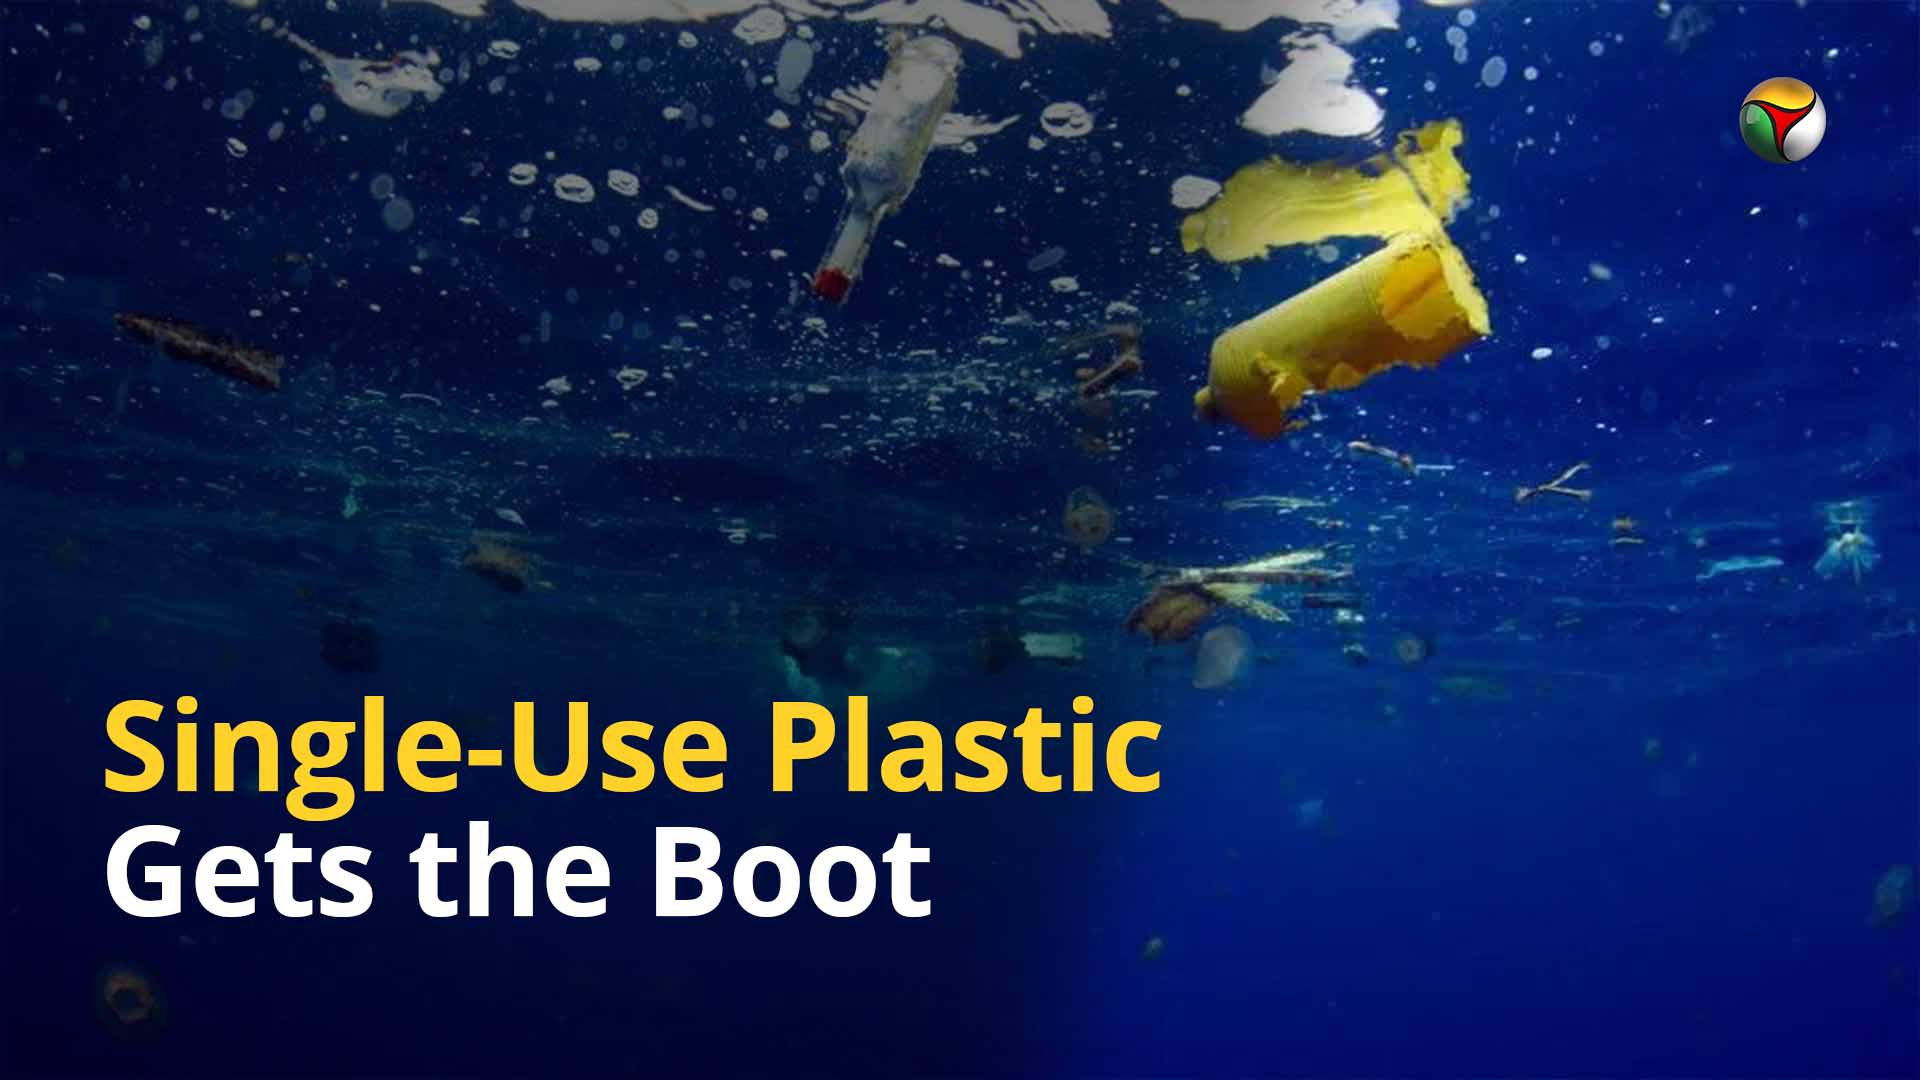 Explained: Indias battle to eliminate single-use plastic by 2022